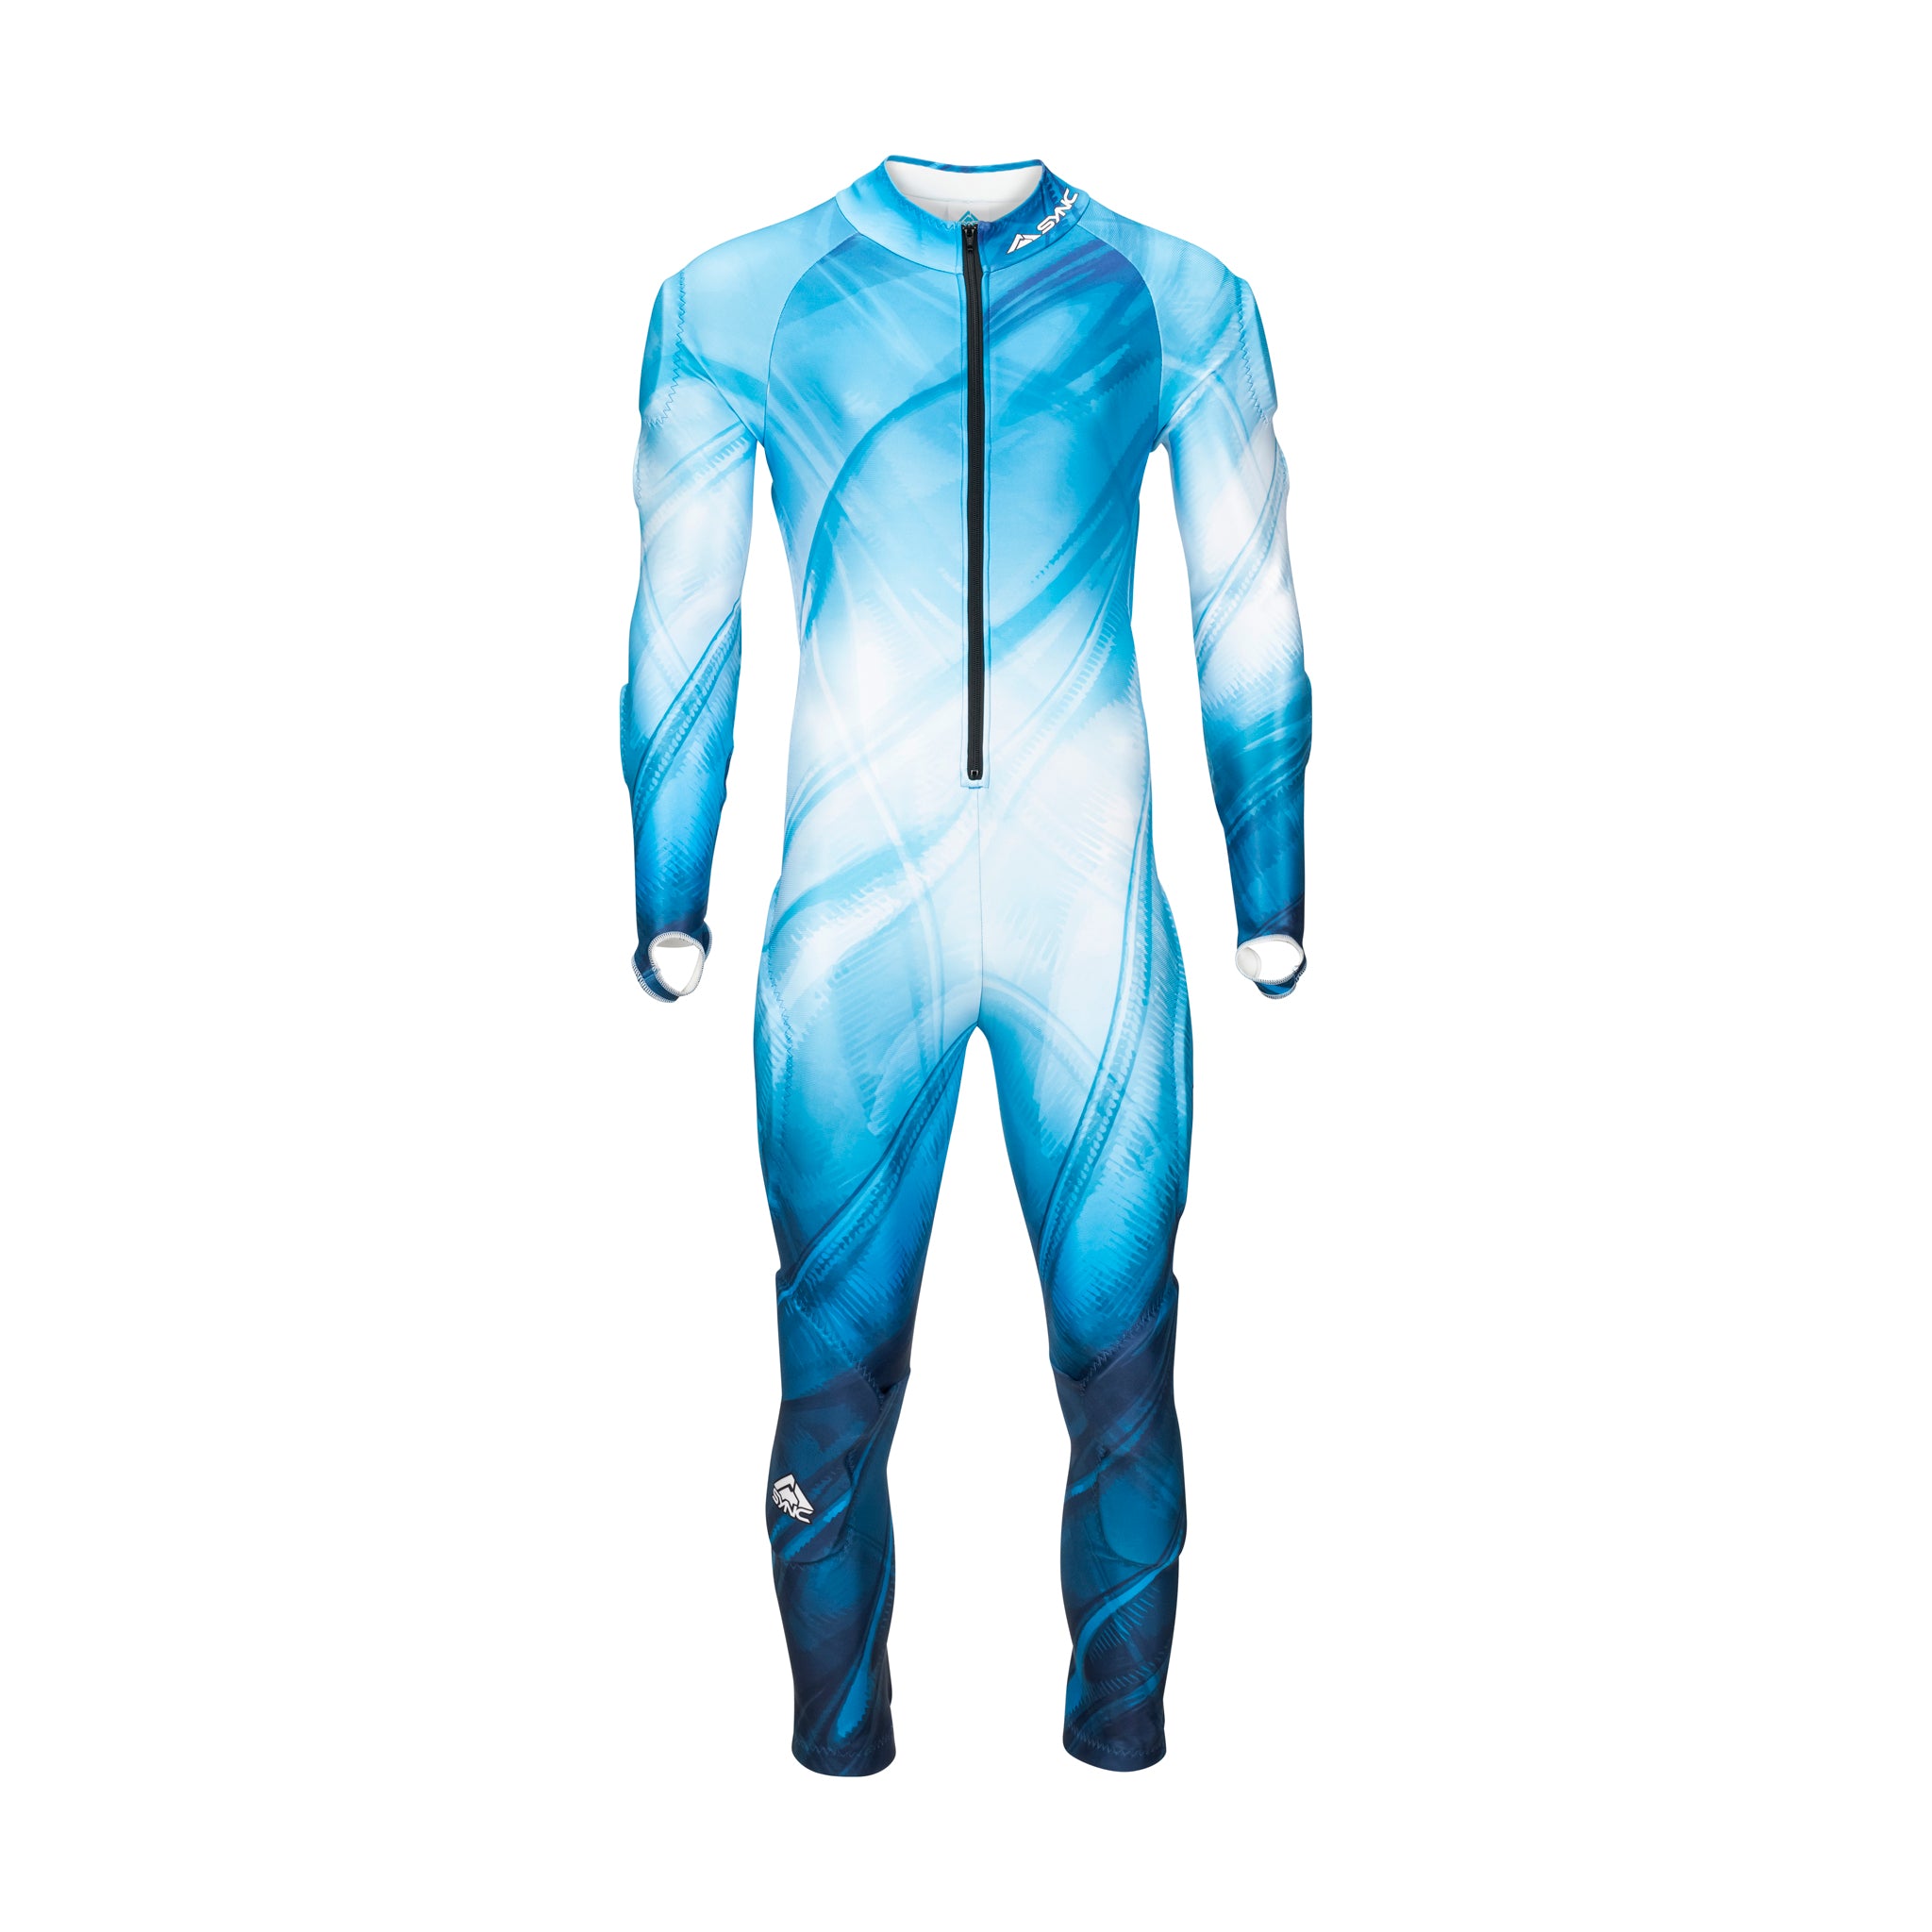 Stef Adult Race Suit - Blue/White